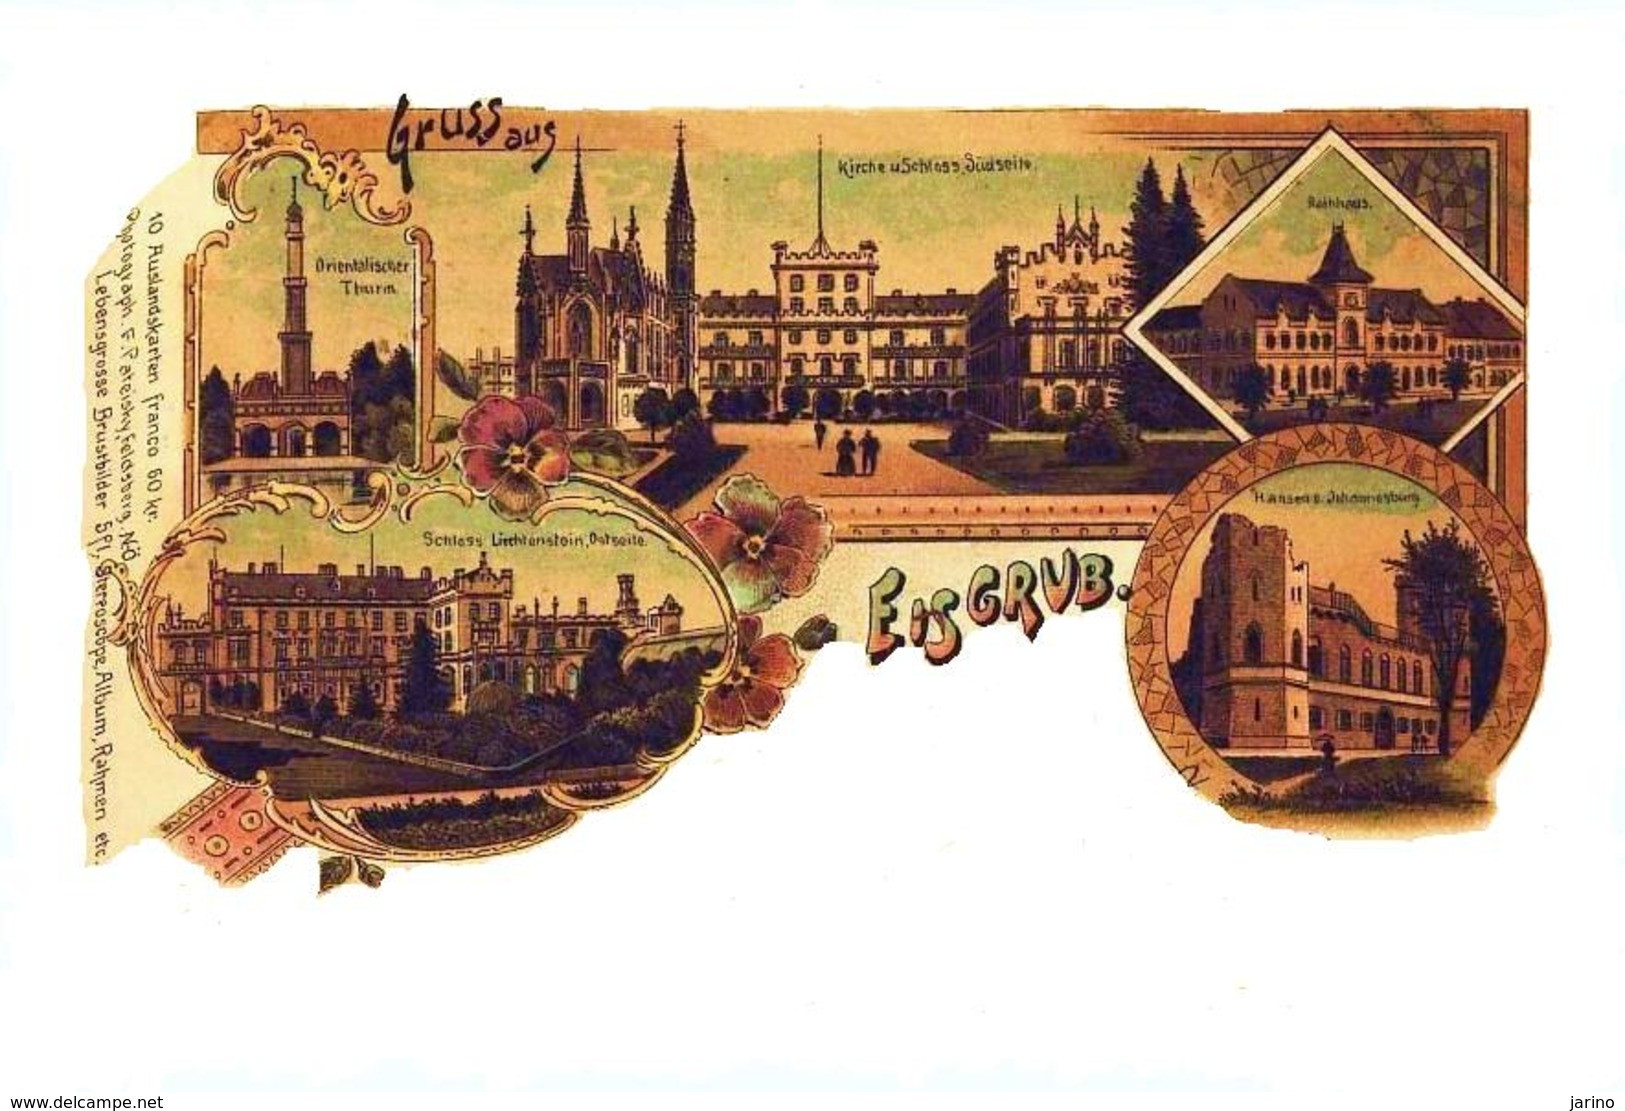 Lednice - Eisgrub 1899, Kreis - Okres: Breclav, Tschechische Republik, Litho, Reproduction - Tschechische Republik